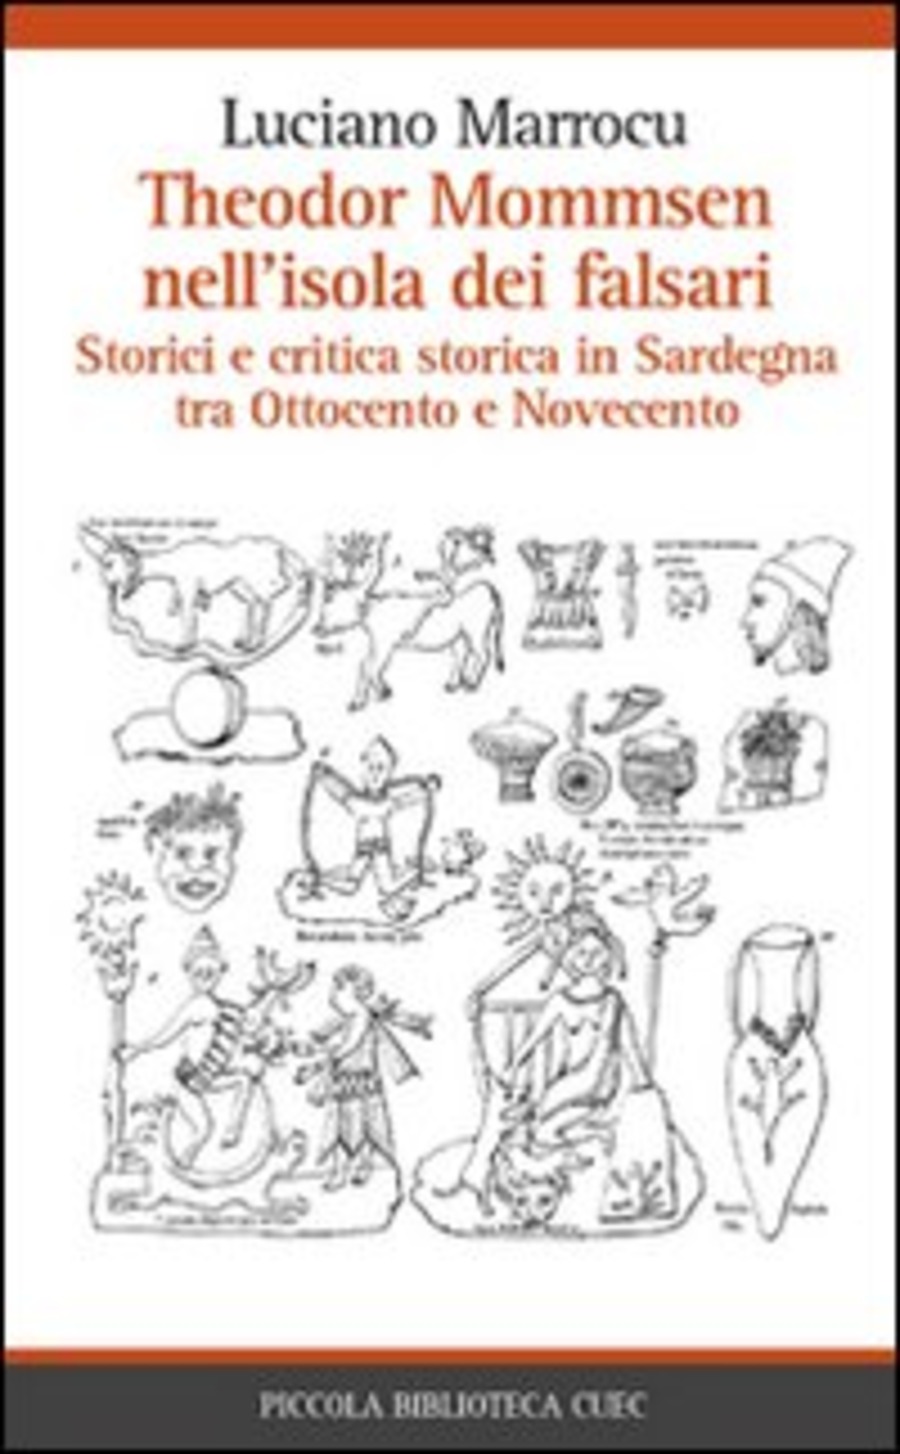 Theodor Mommsen nell'isola dei falsari. Storici e critica in Sardegna tra Ottocento e Novecento